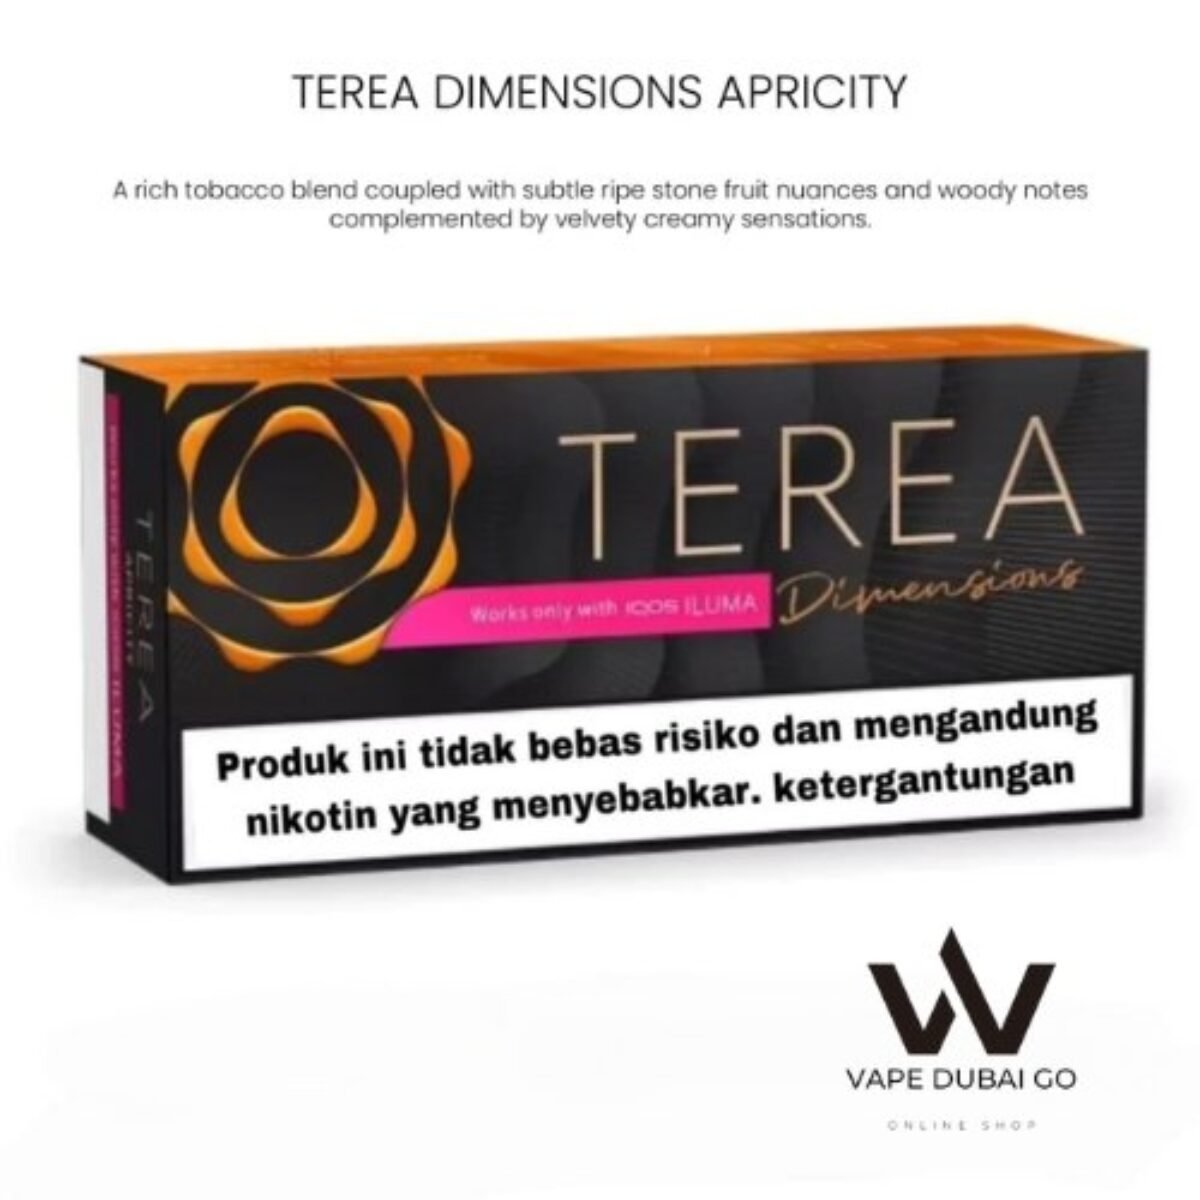 Terea - Amber - Buy Online